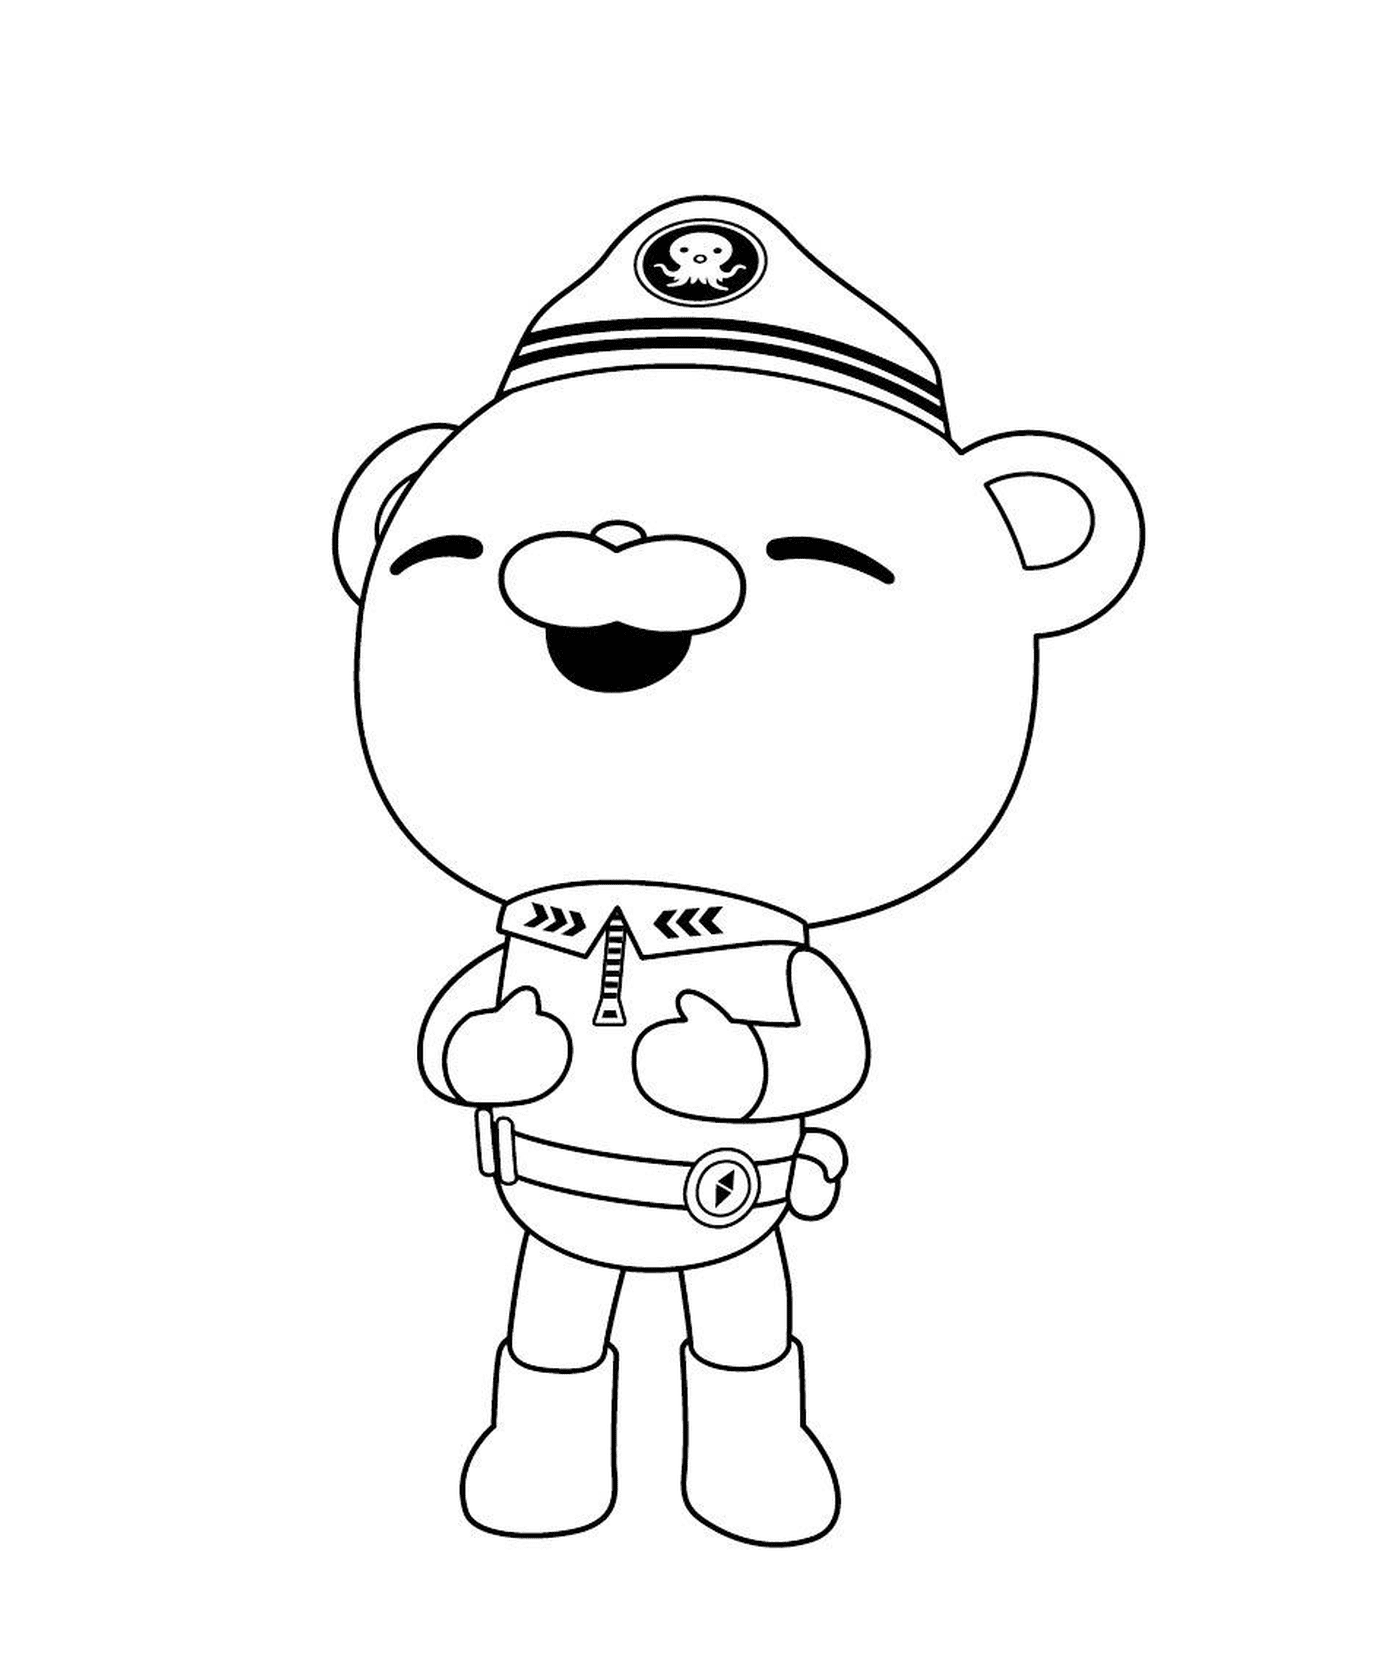  Capitão Barnacles dos octanautas, um urso em seu uniforme 